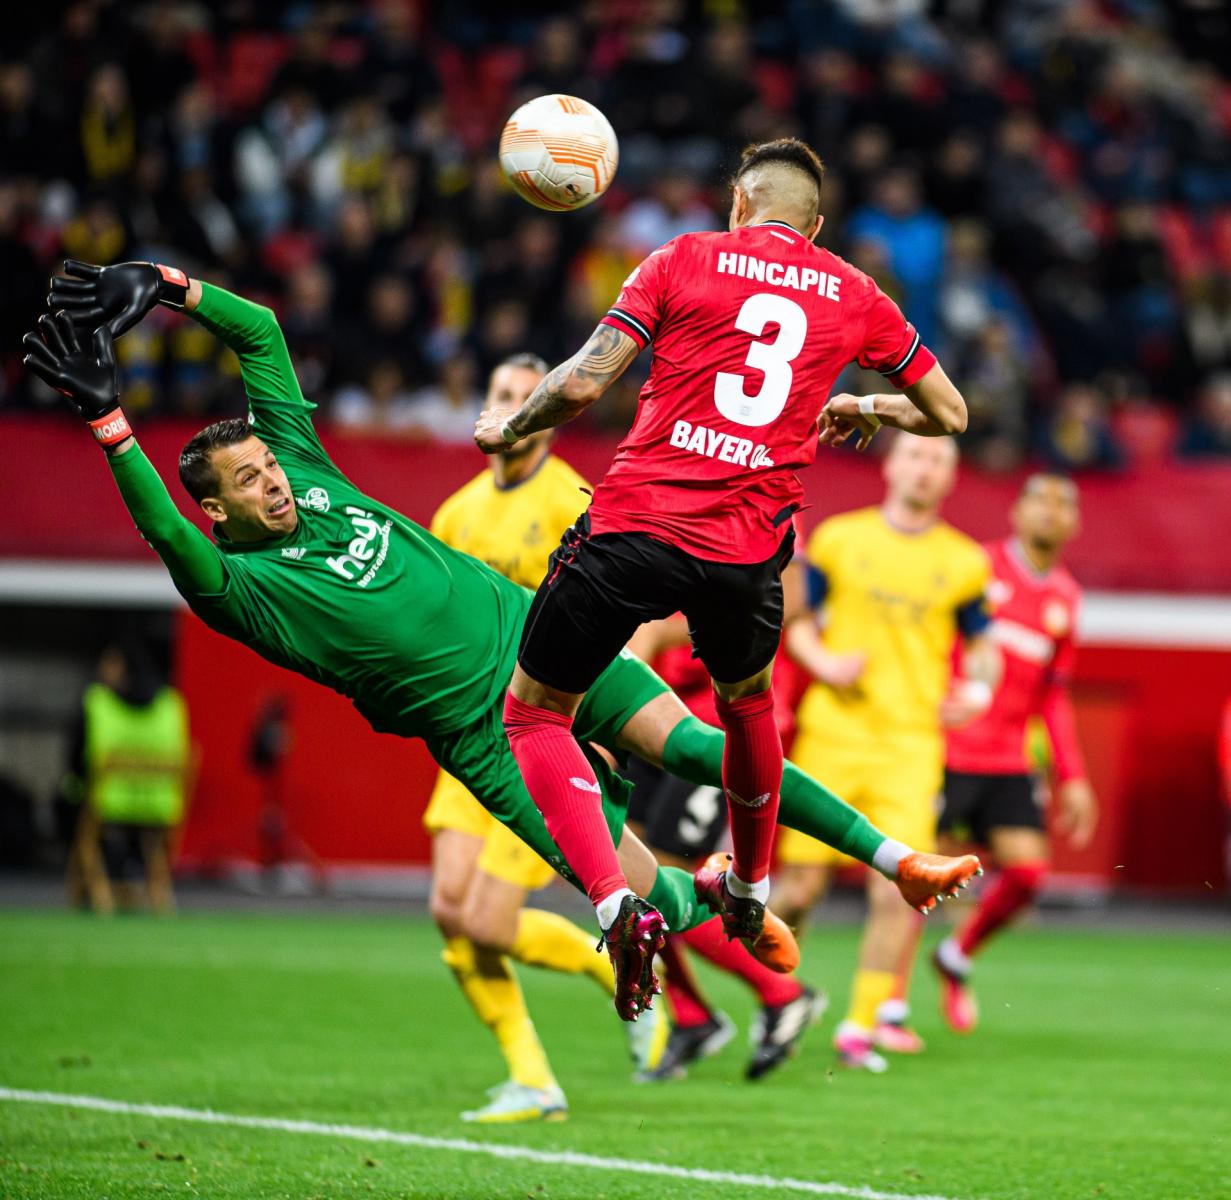 Hincapié rematando un balón colgado / Fuente: Bayer 04 Leverkusen